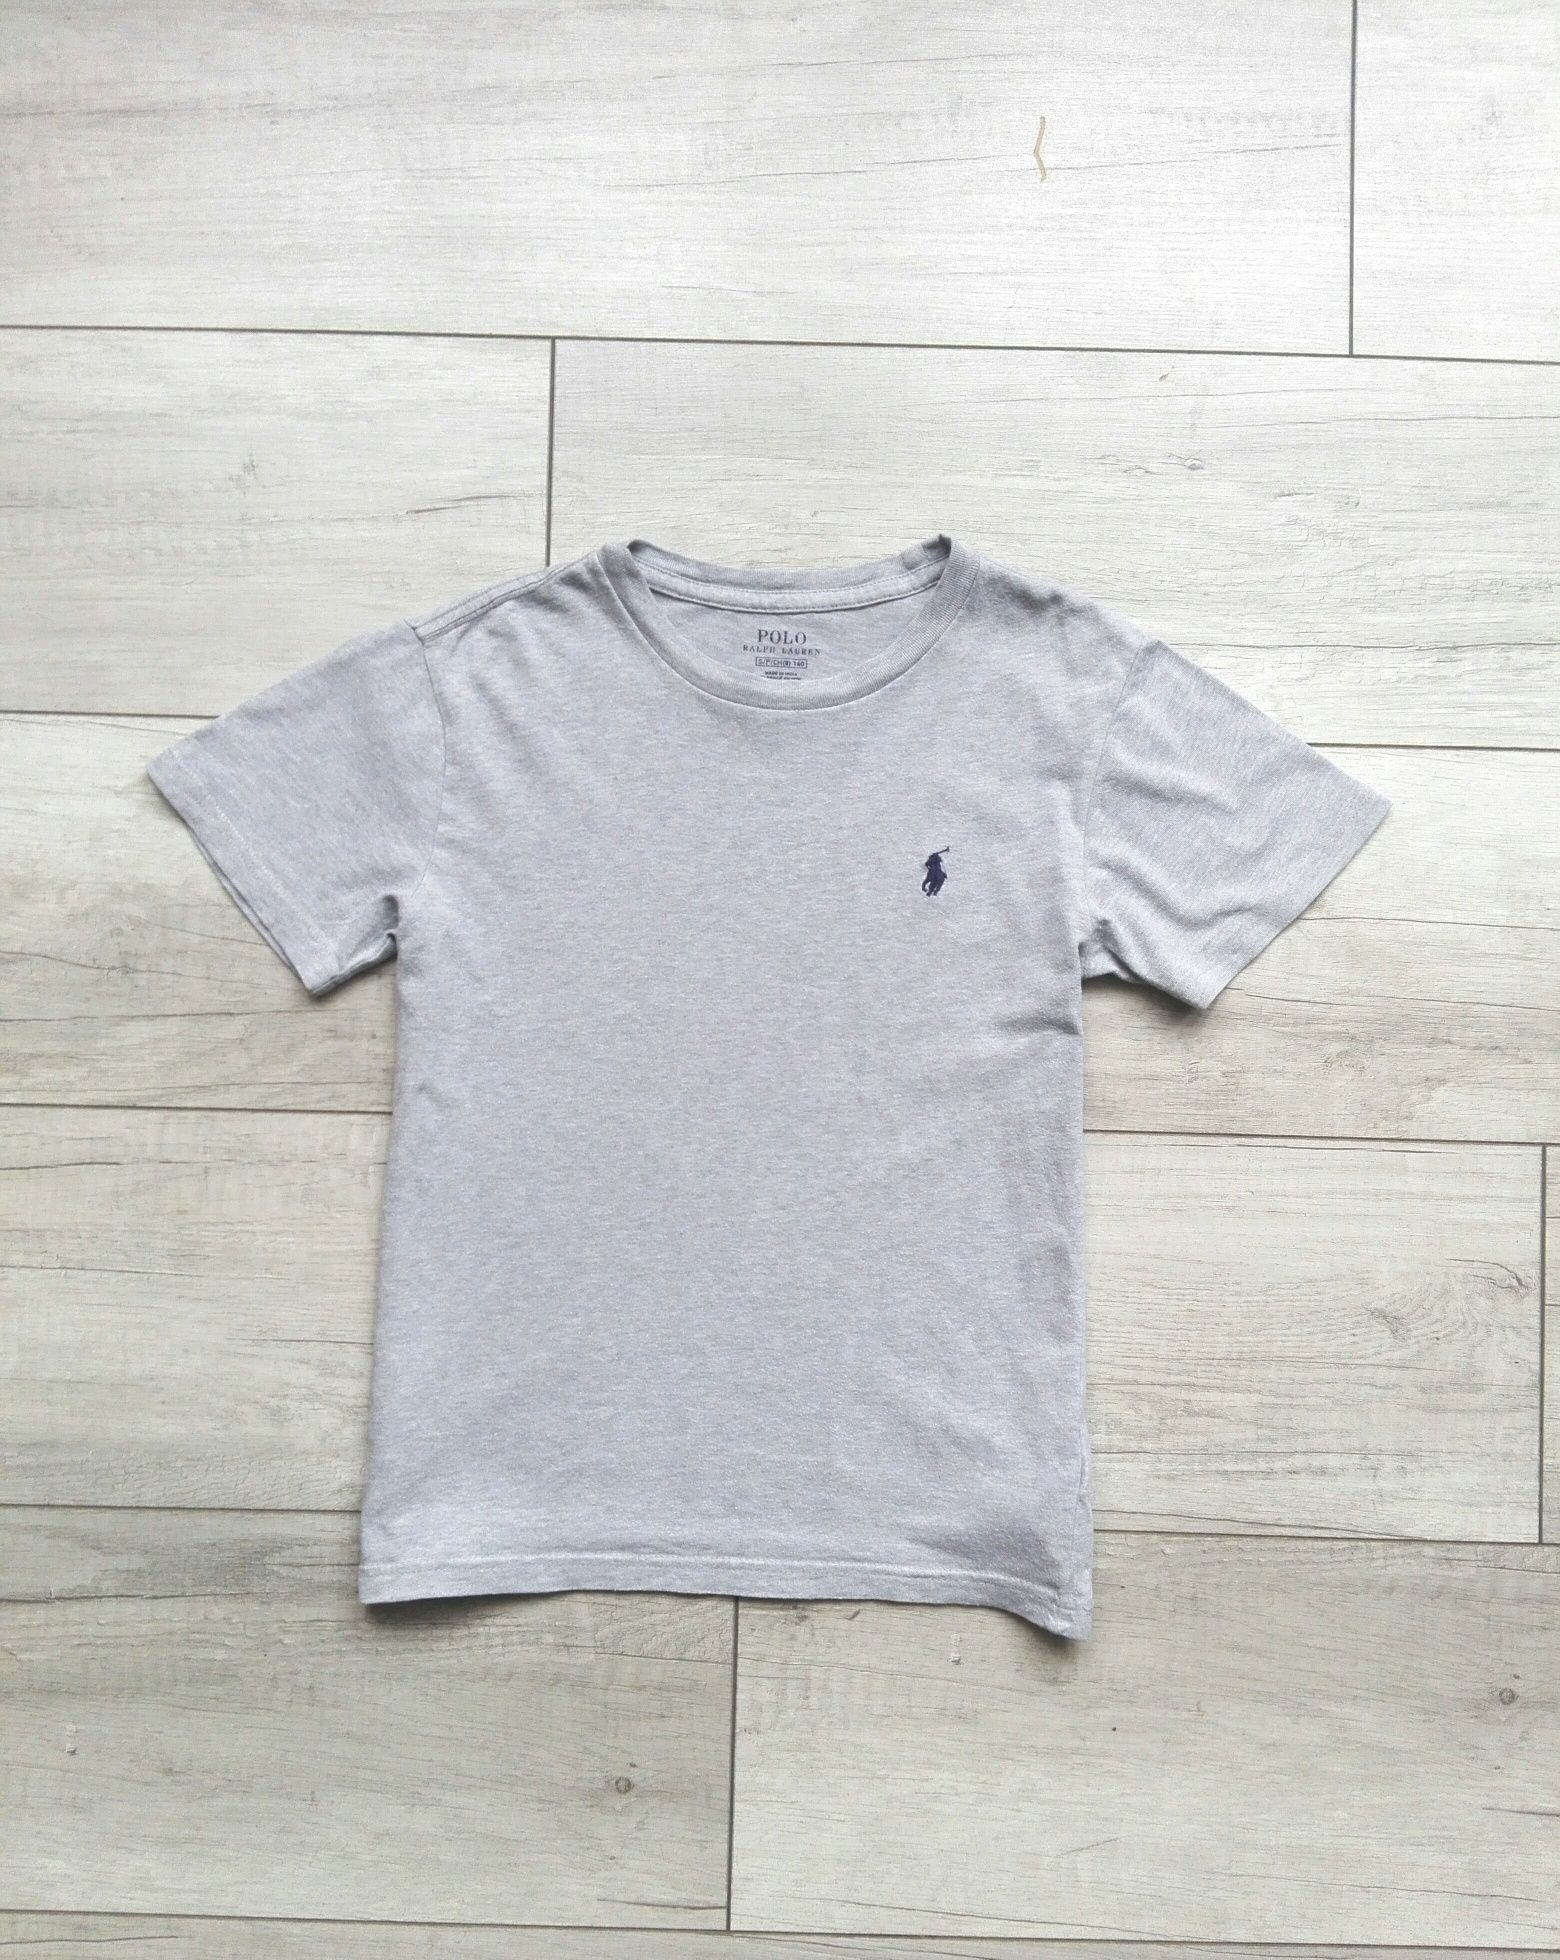 Ralph Lauren polo oryginalny t-shirt koszulka rozm 140